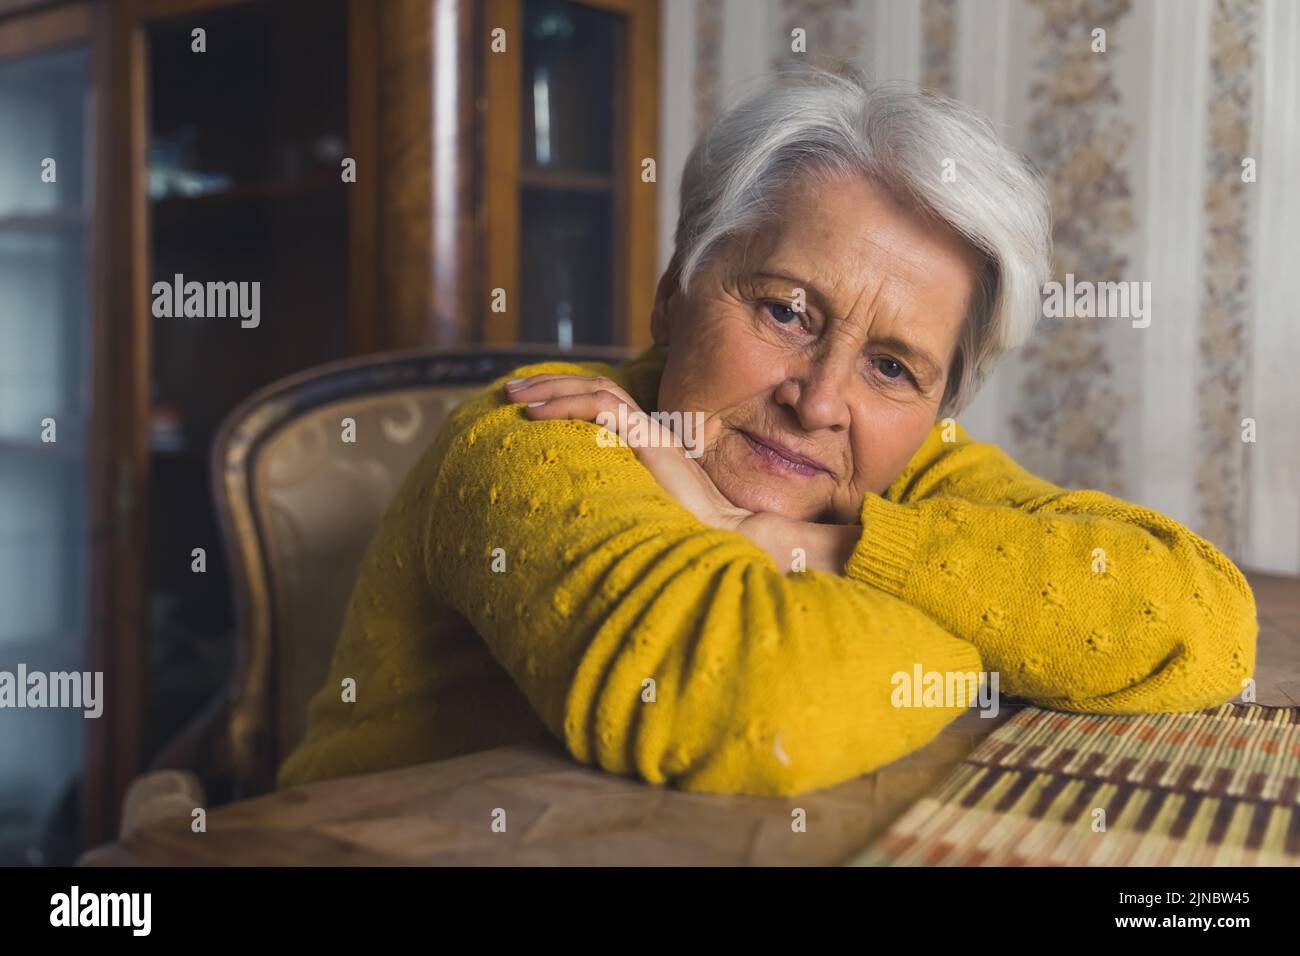 Sola vedova anziana dai capelli grigi seduta al tavolo del soggiorno con la testa appoggiata sulle braccia incrociate e pensando alla sua famiglia. Foto di alta qualità Foto Stock